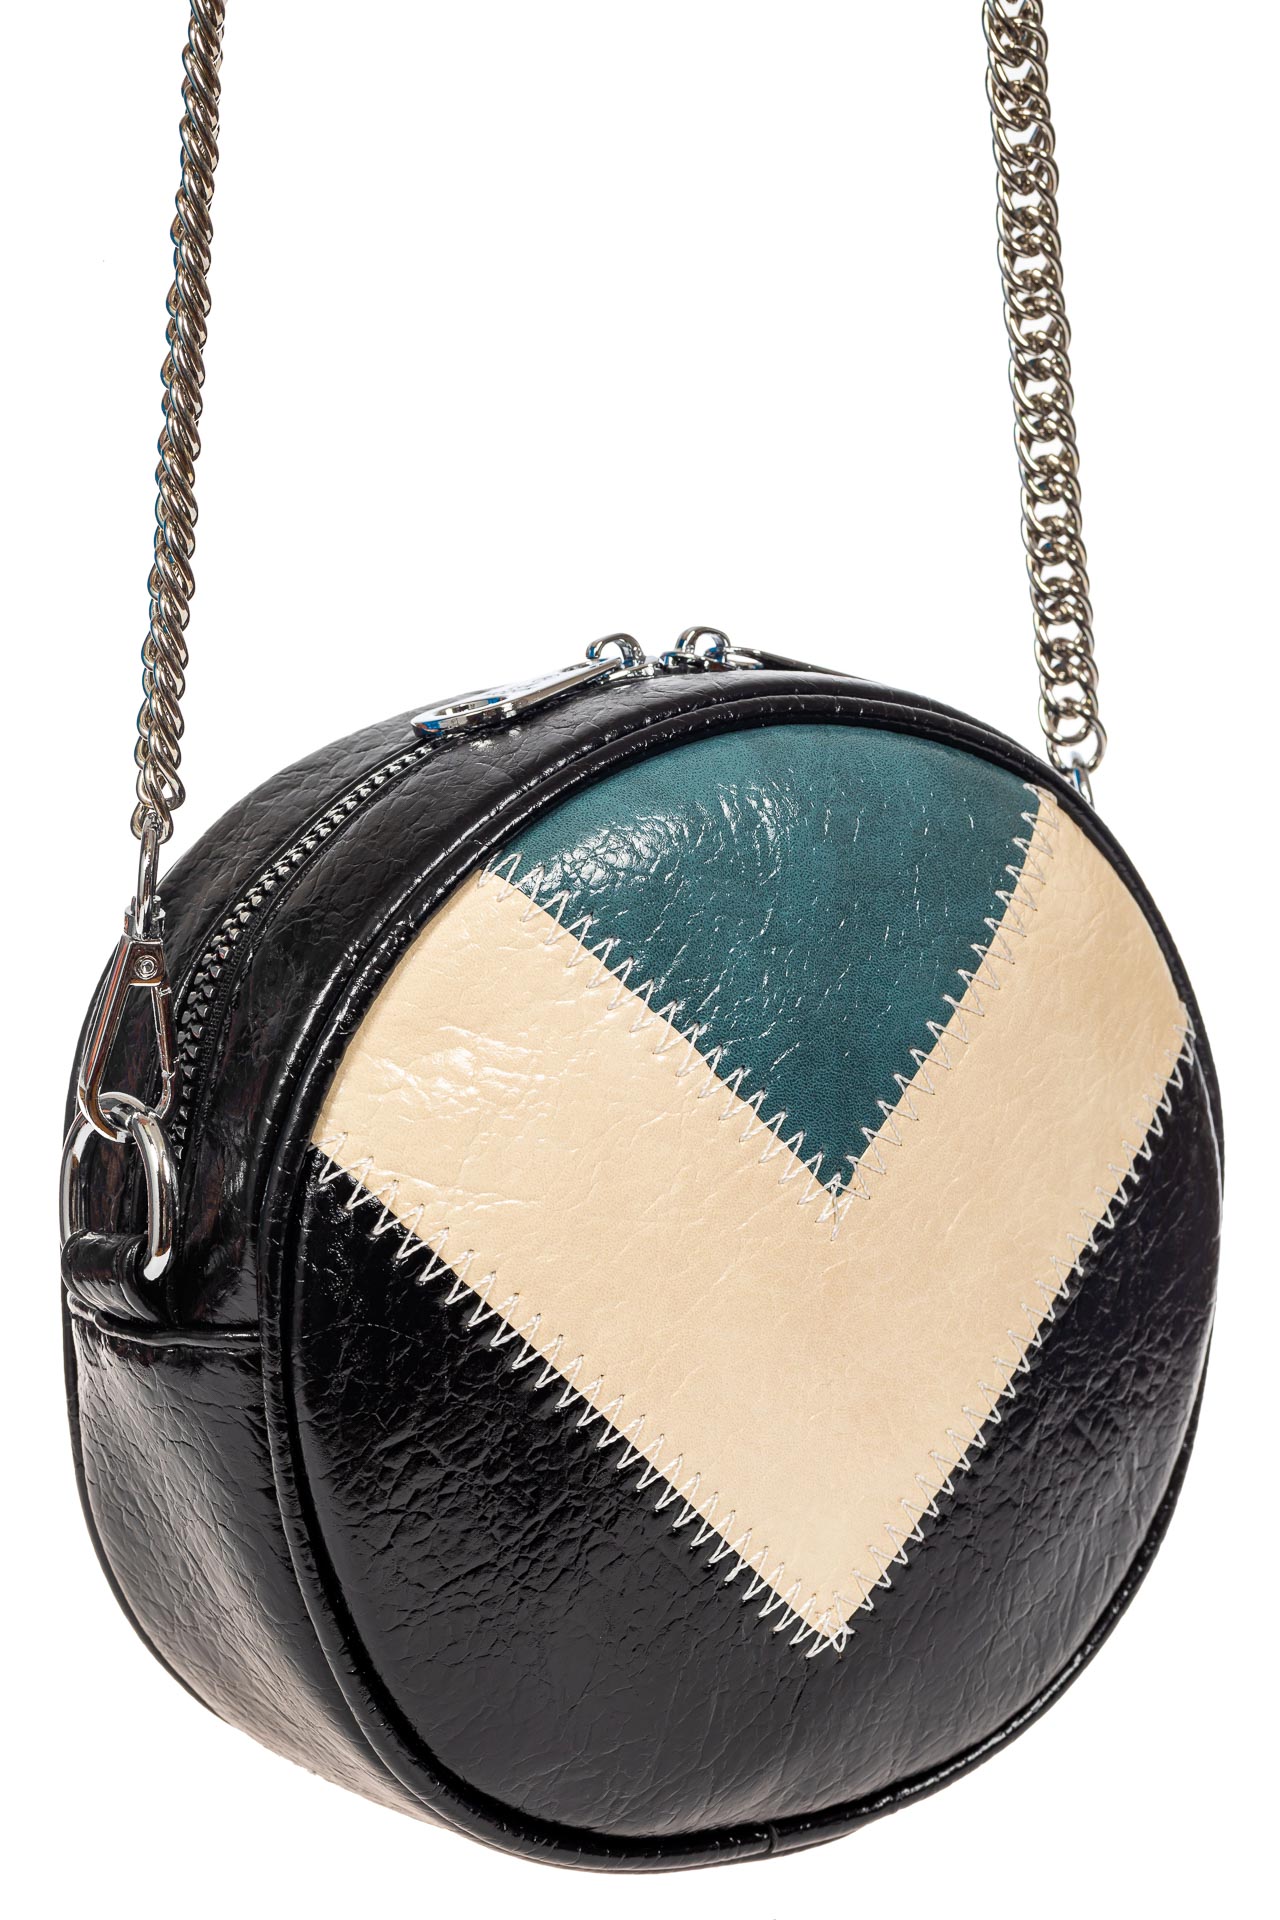 Женская круглая сумка из экокожи, цвет черный с синим